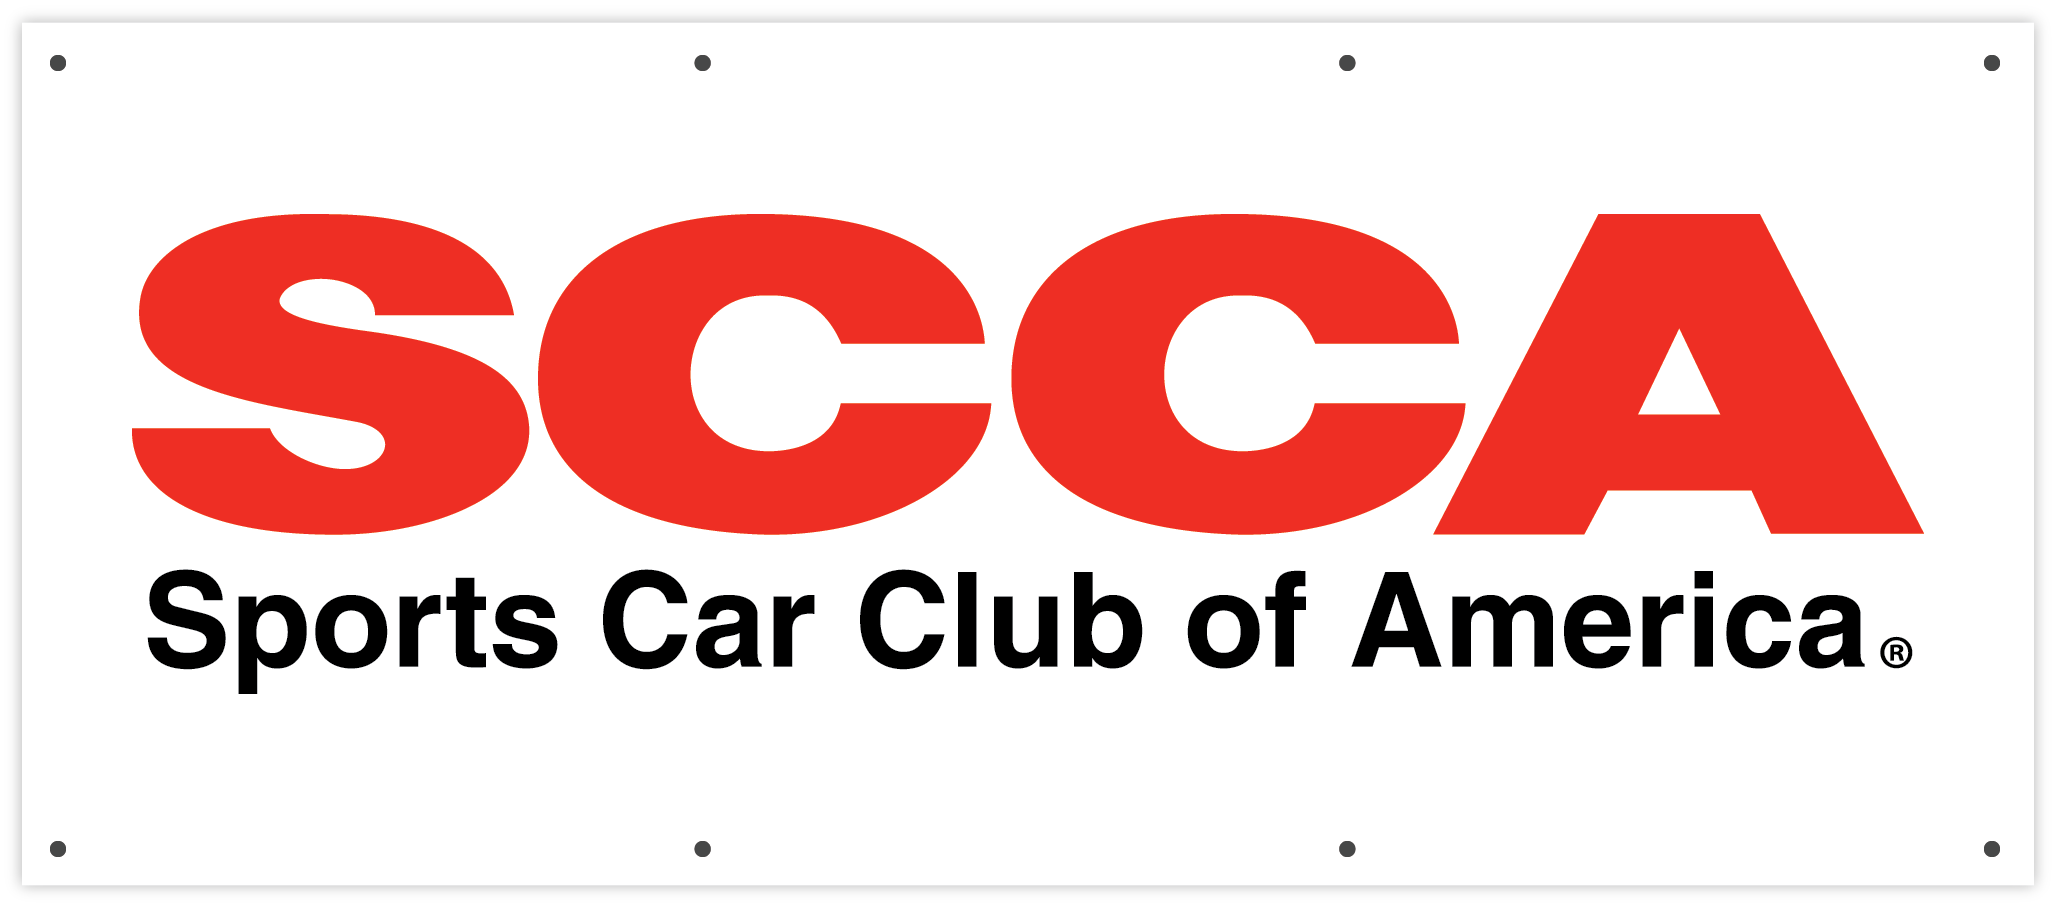 7701 SCCA Logo Banner (7' x 3')